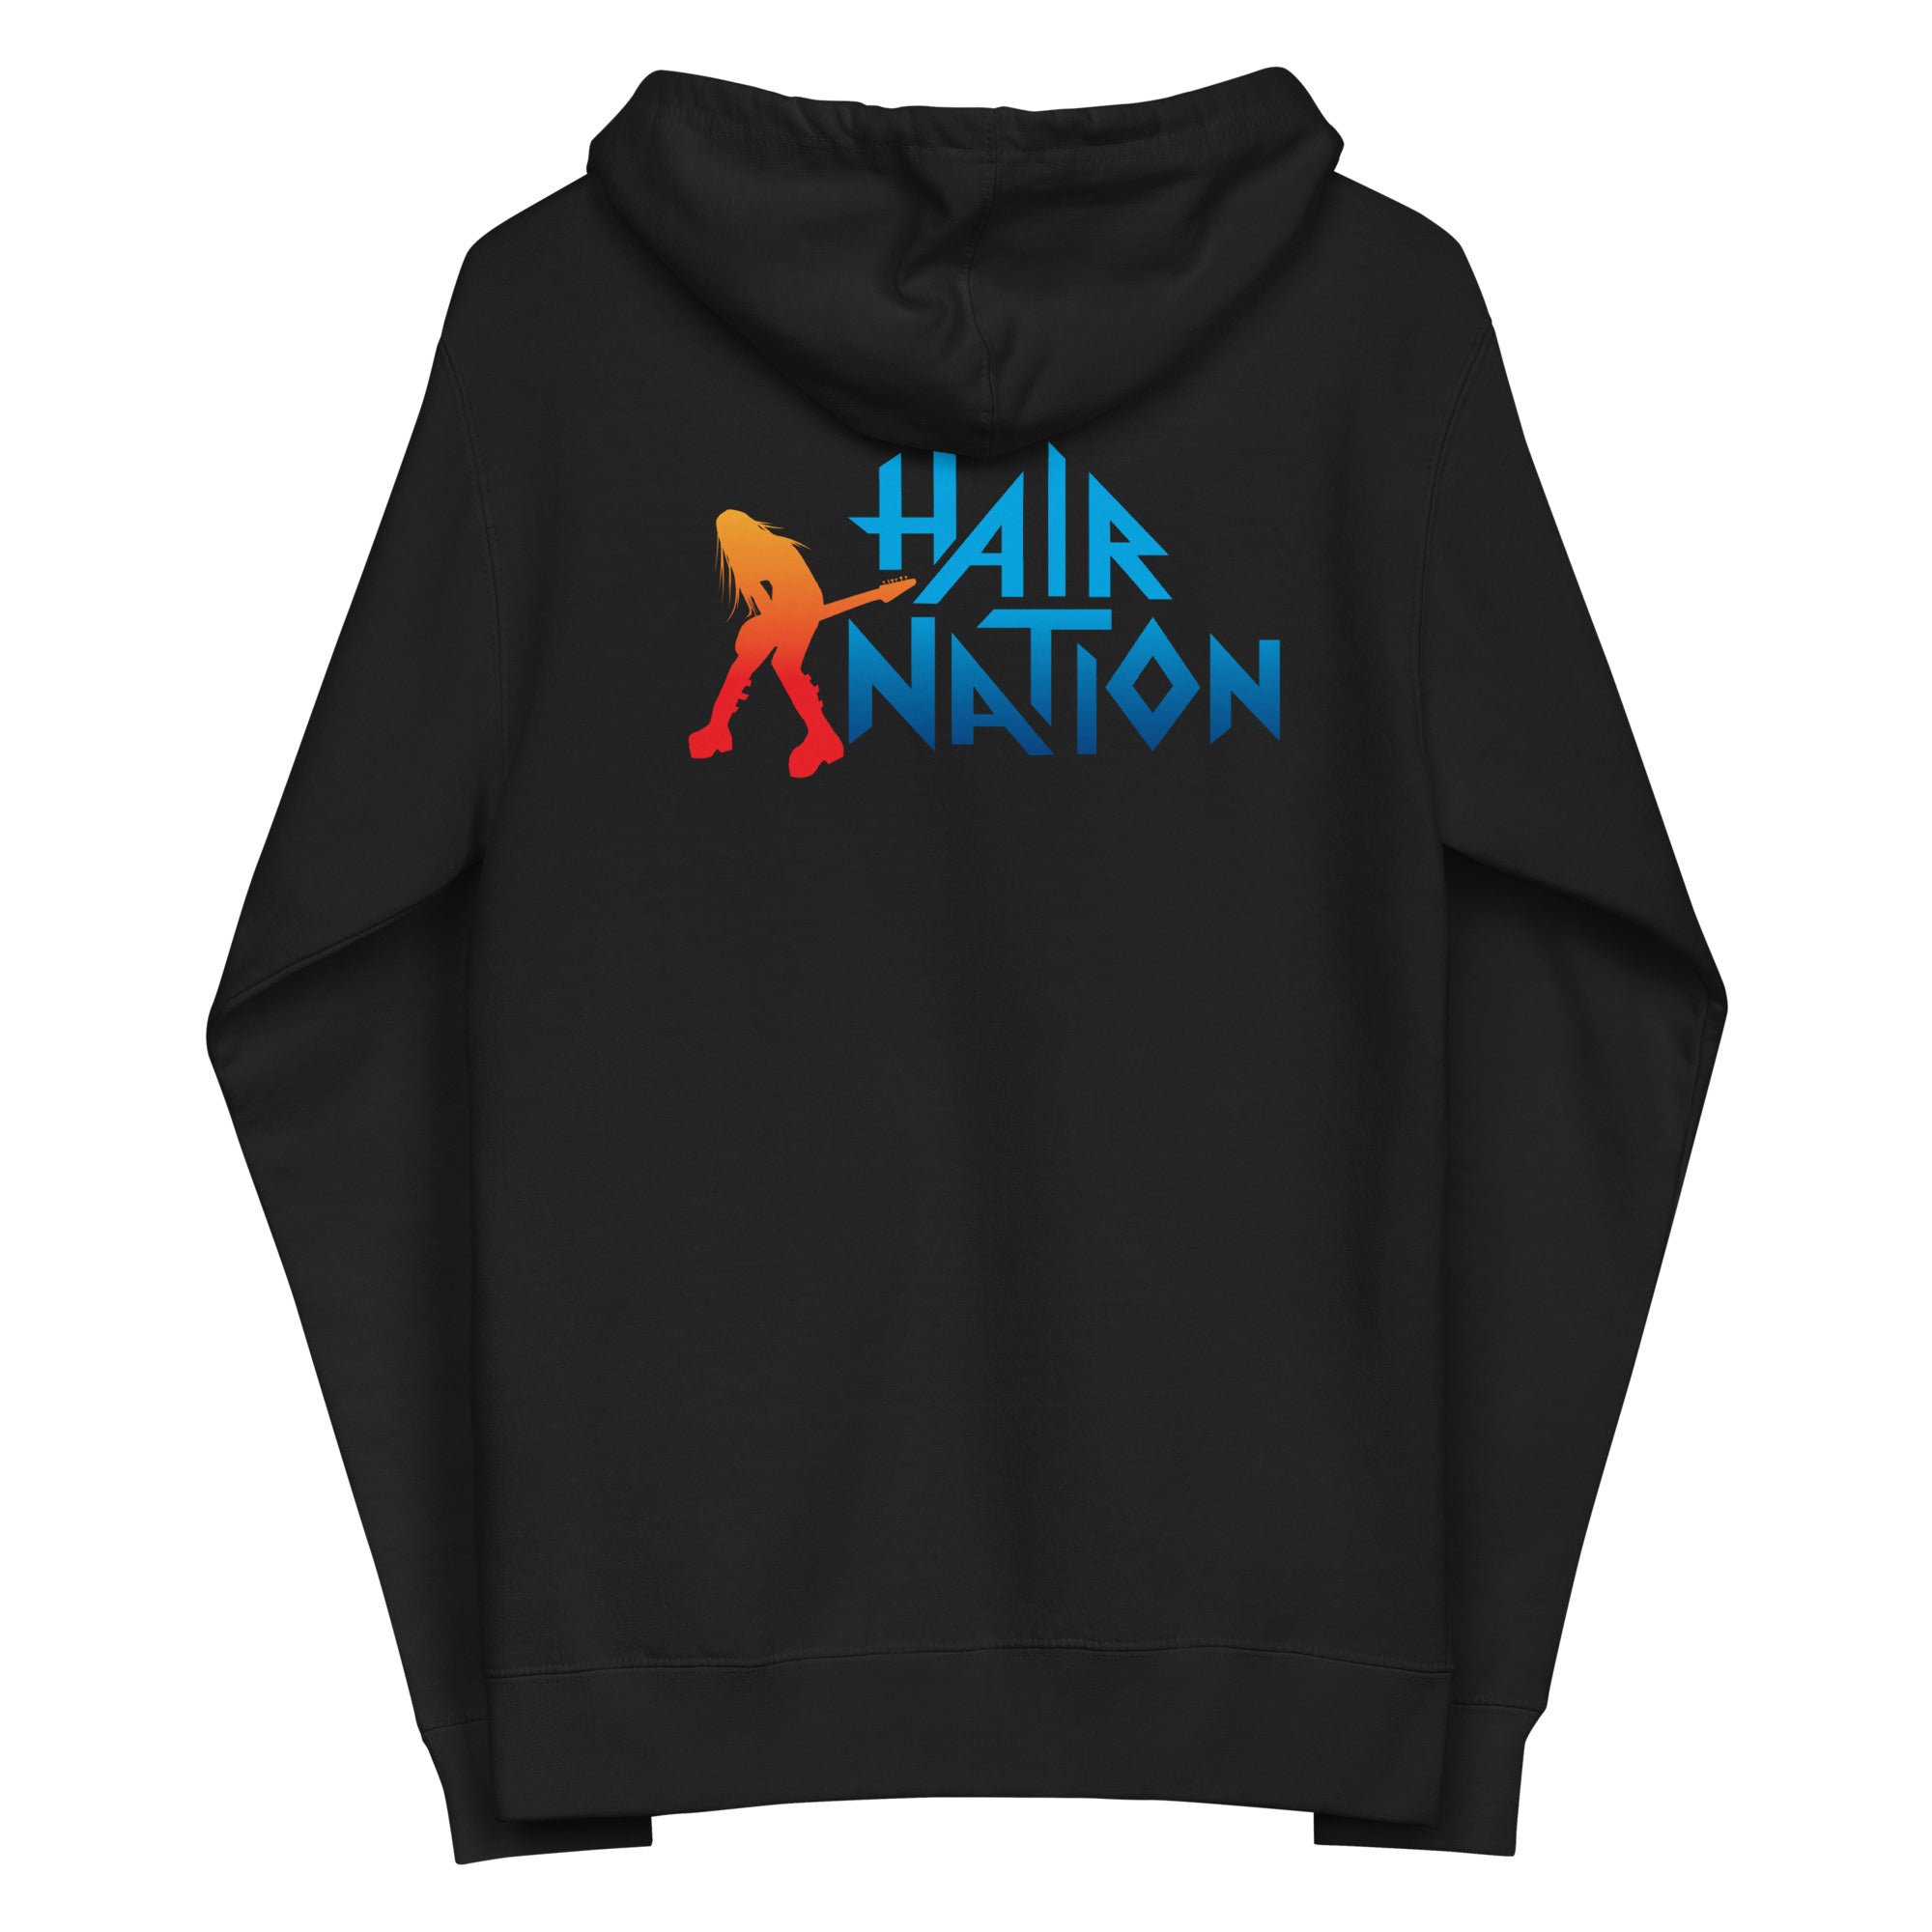 Hair Nation: Zip Hoodie